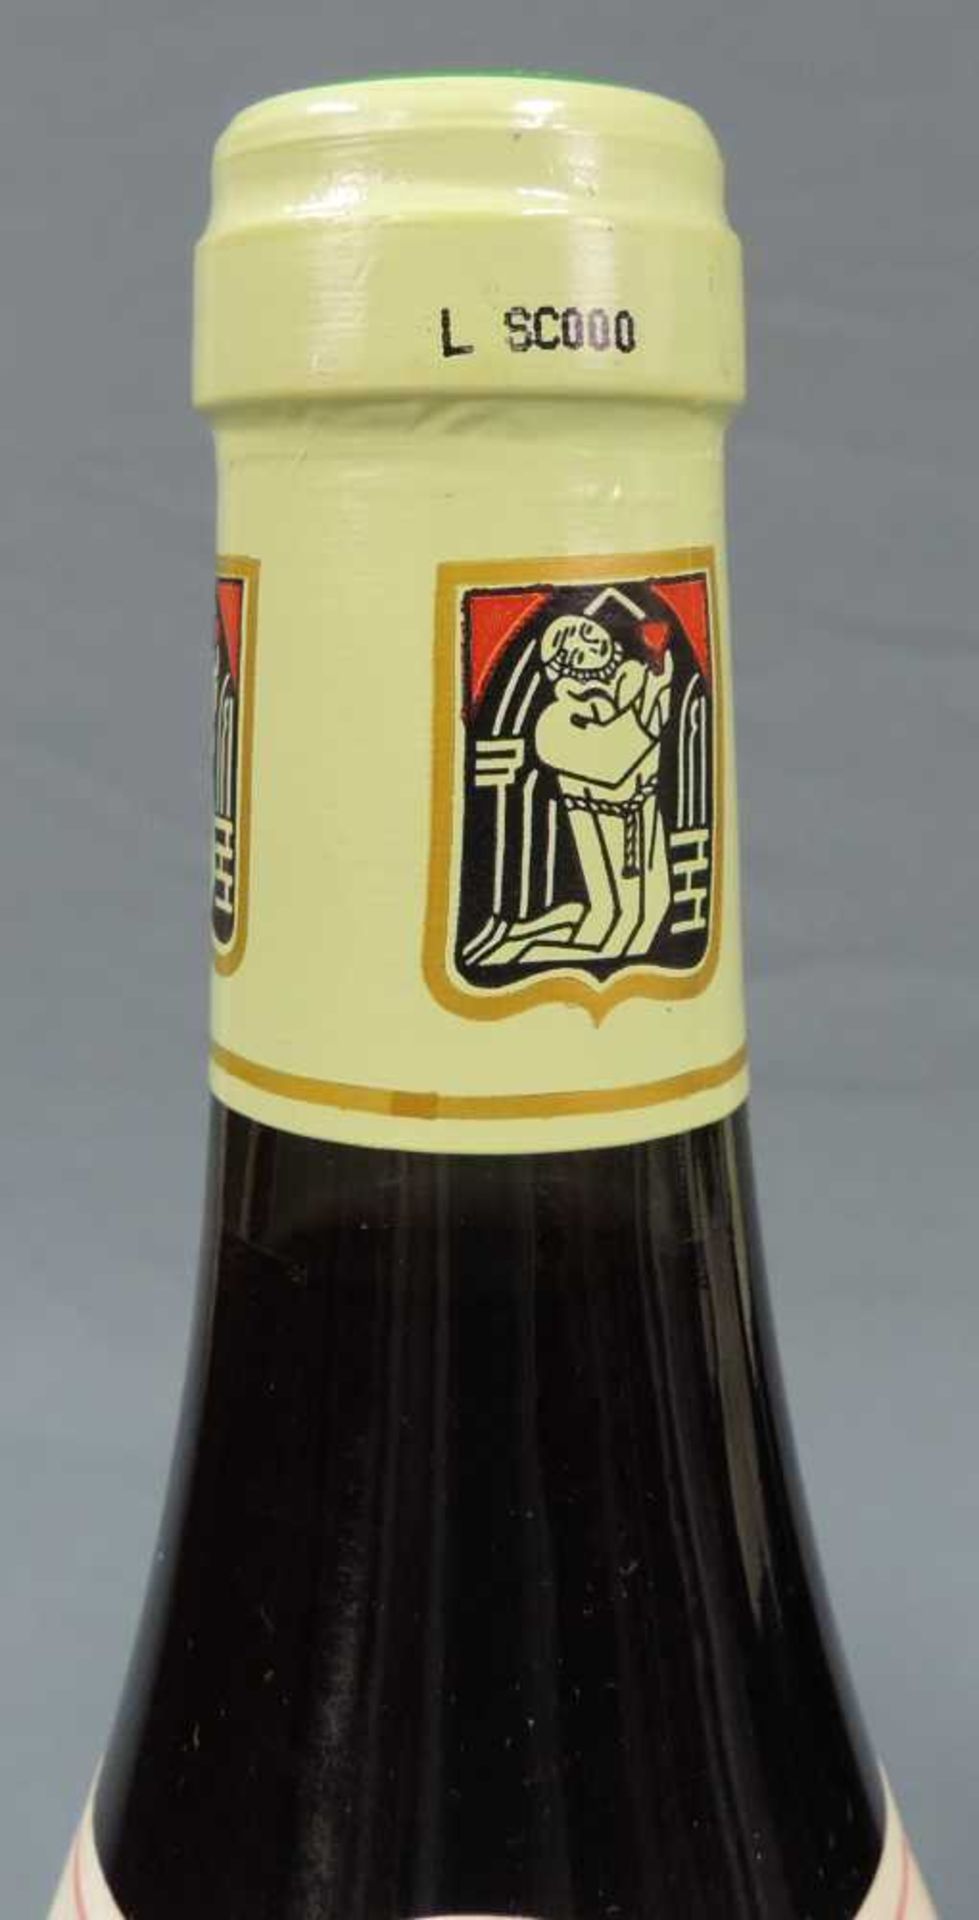 2000 Domaine Prieur - Brunet, Satenay Comme Premier Cru, France. 8 Flaschen, 750 ml, Alc., 13,5% - Bild 5 aus 6